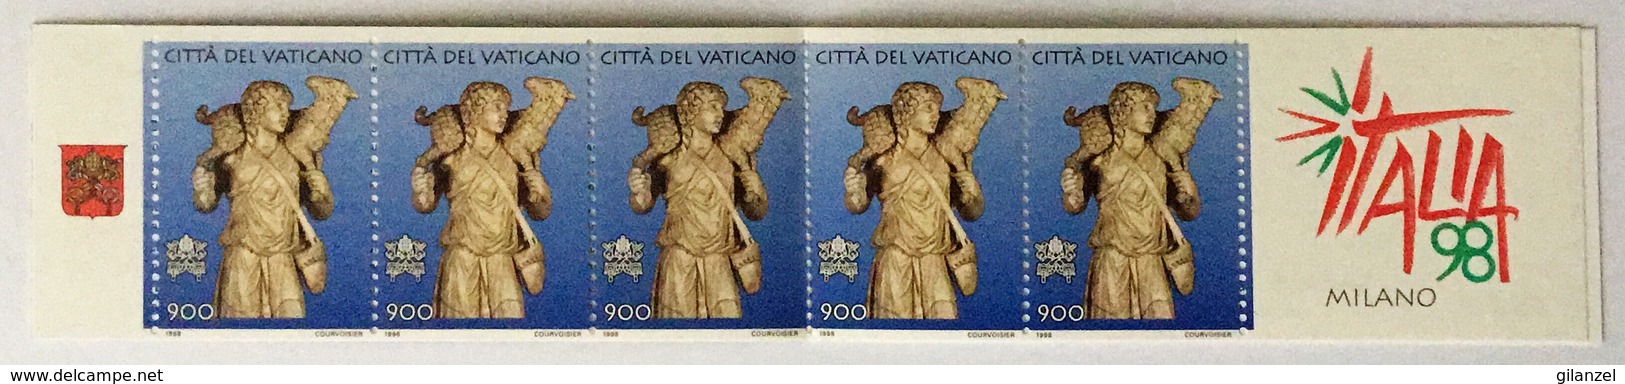 Vaticano 1998 Libretto Nuovo “Italia ‘98” Giornata Dell’Arte - Libretti